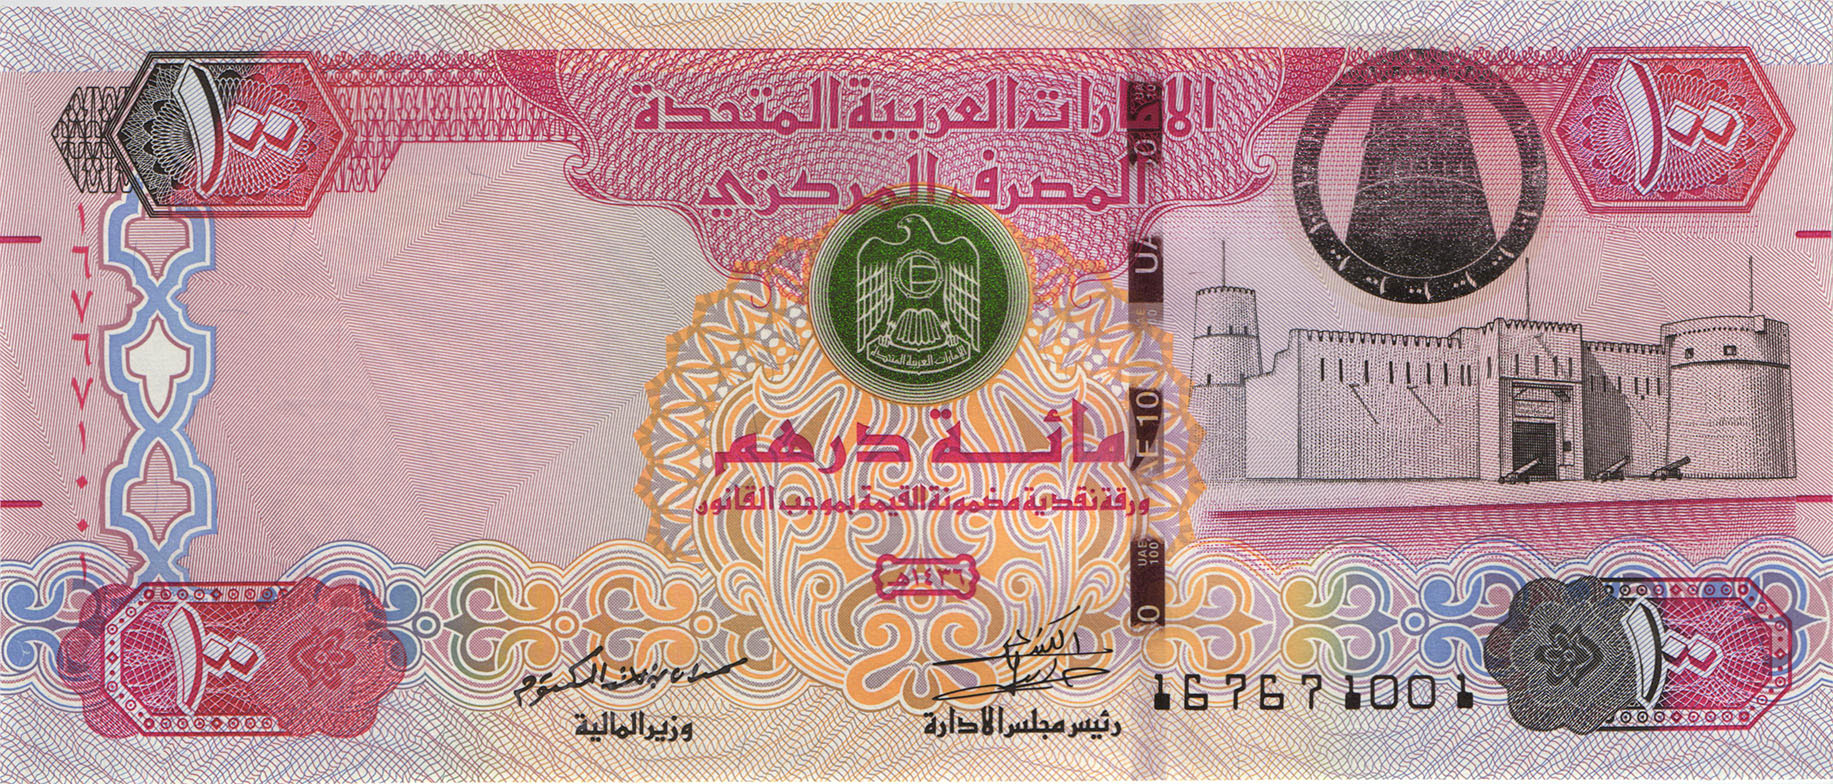 Купить дирхамы ростов. Банкноты United arab Emirates,2008, 50 dirhams. 100 Дирхам ОАЭ. Дирхам ОАЭ бонны. Монета Объединённых арабских Эмиратов 100.